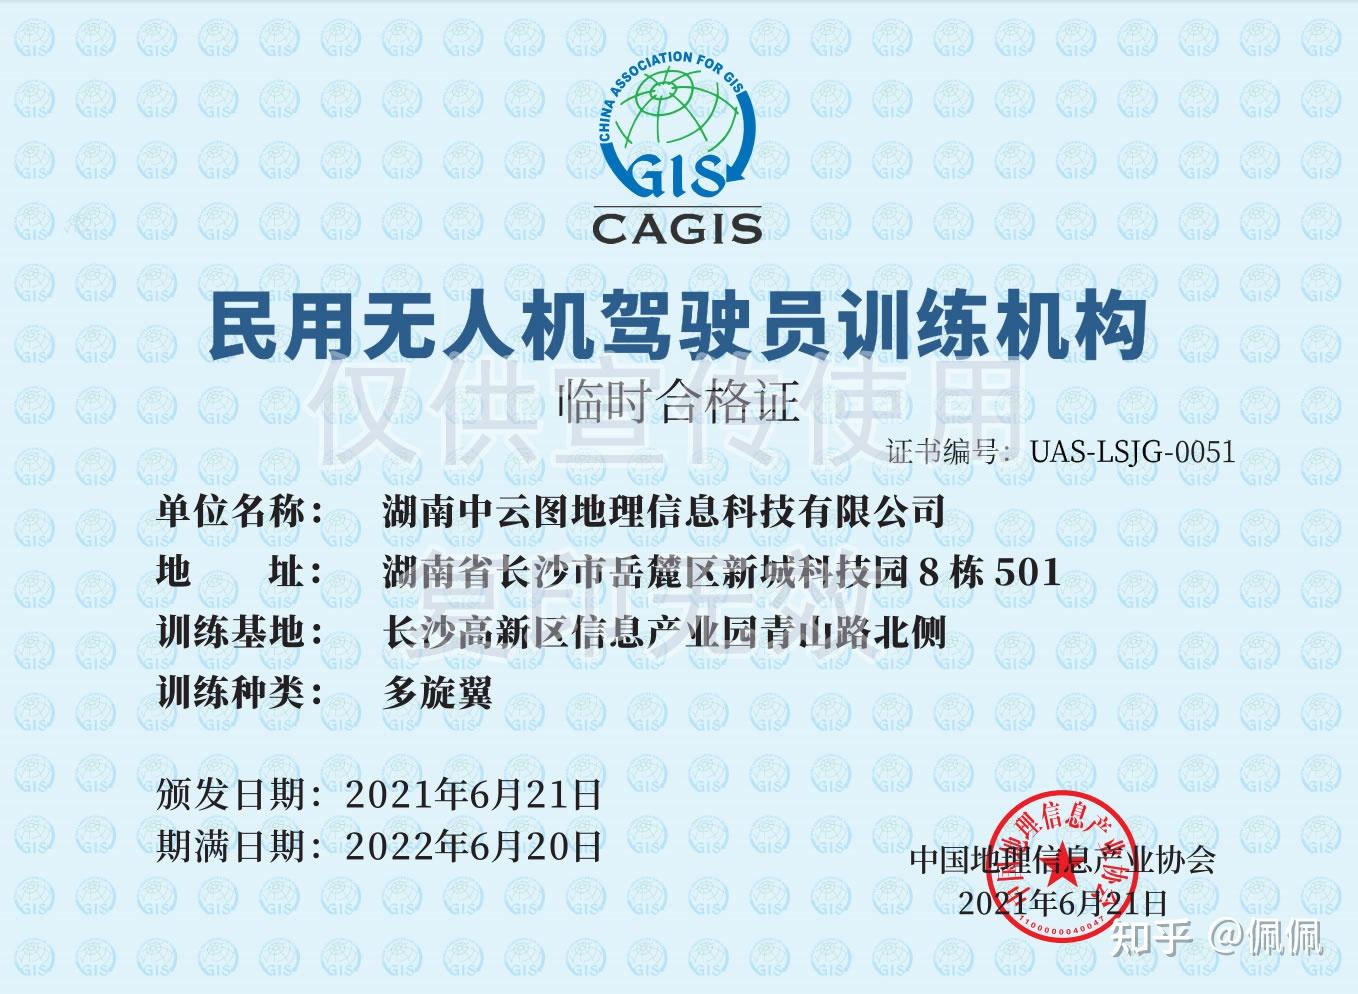 无人机驾驶证考试项目、流程及考试标准 - 无人机培训学校 - 深圳中科大智航空技术有限公司